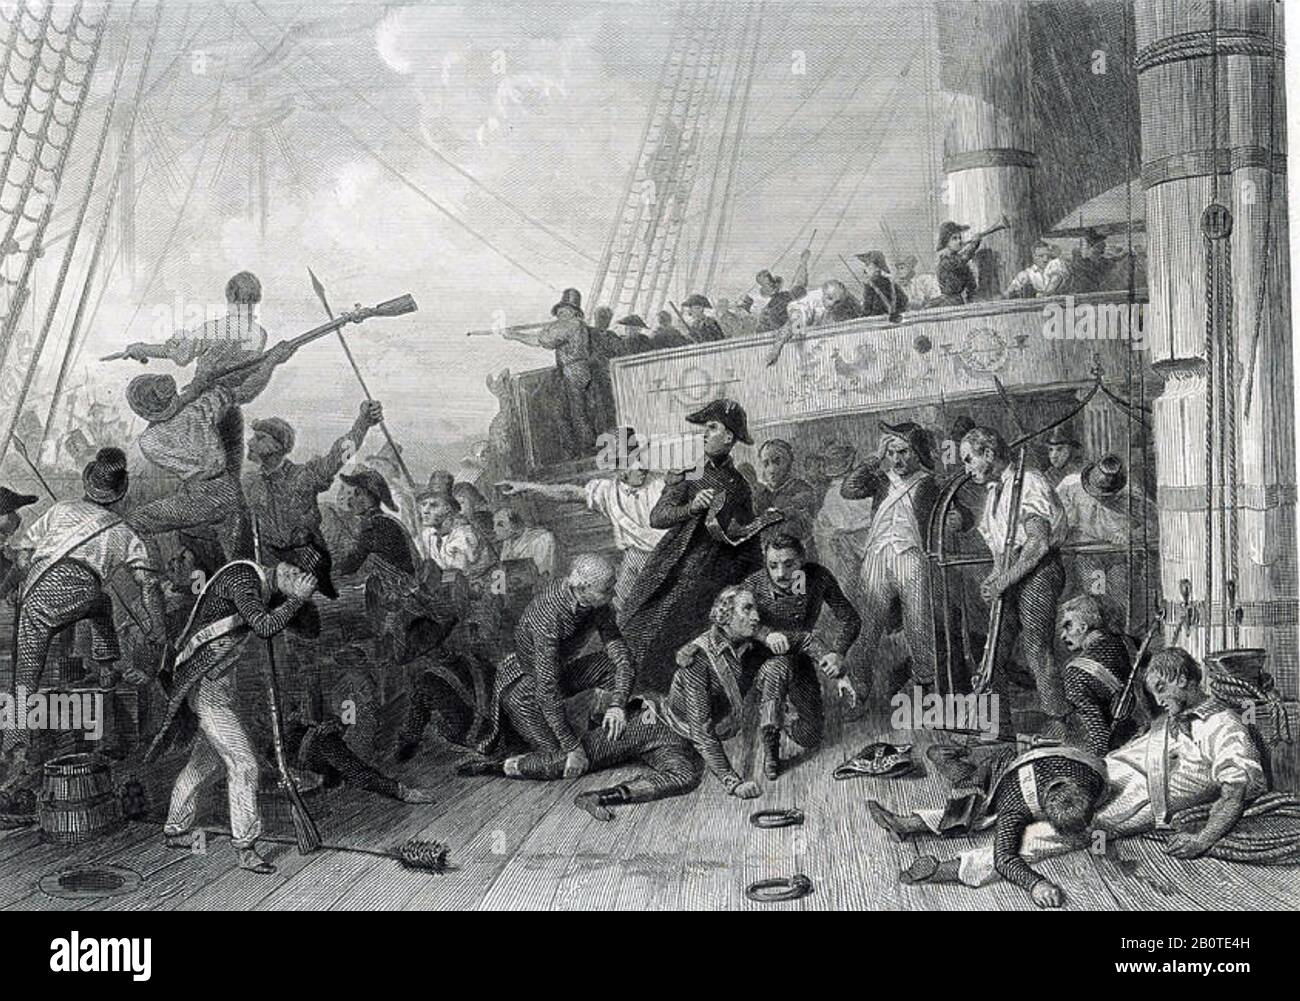 Charles RENÉ MAGNON de MÉDINE (1763-1805) französischer Konter-Admiral bei der Schlacht von Trafalgar an Bord der Algésiras getötet Stockfoto